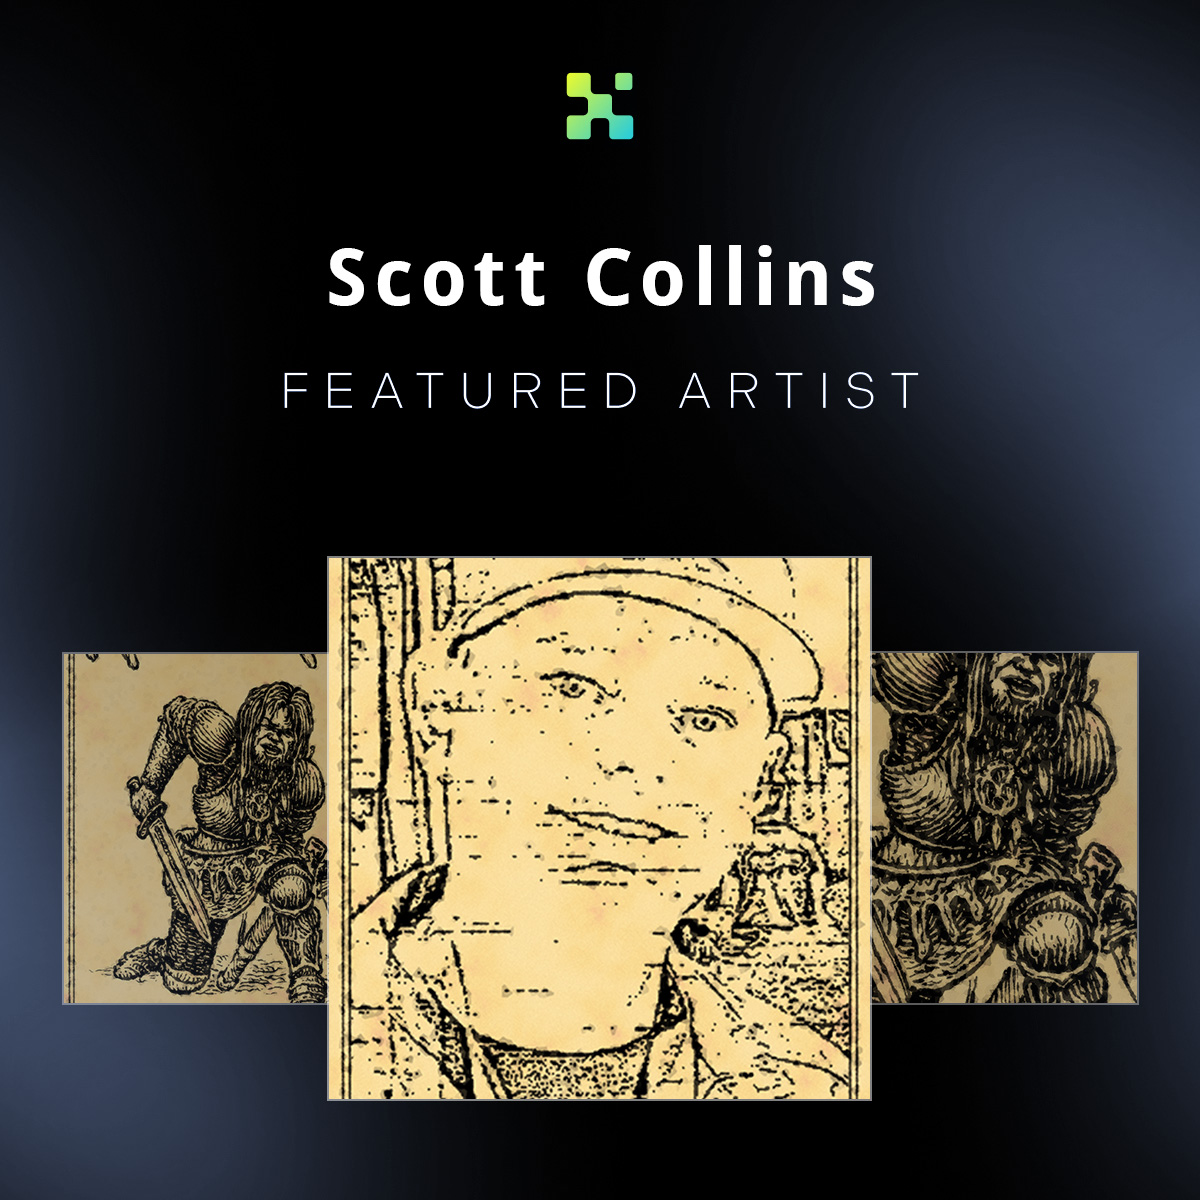 Scott Collins